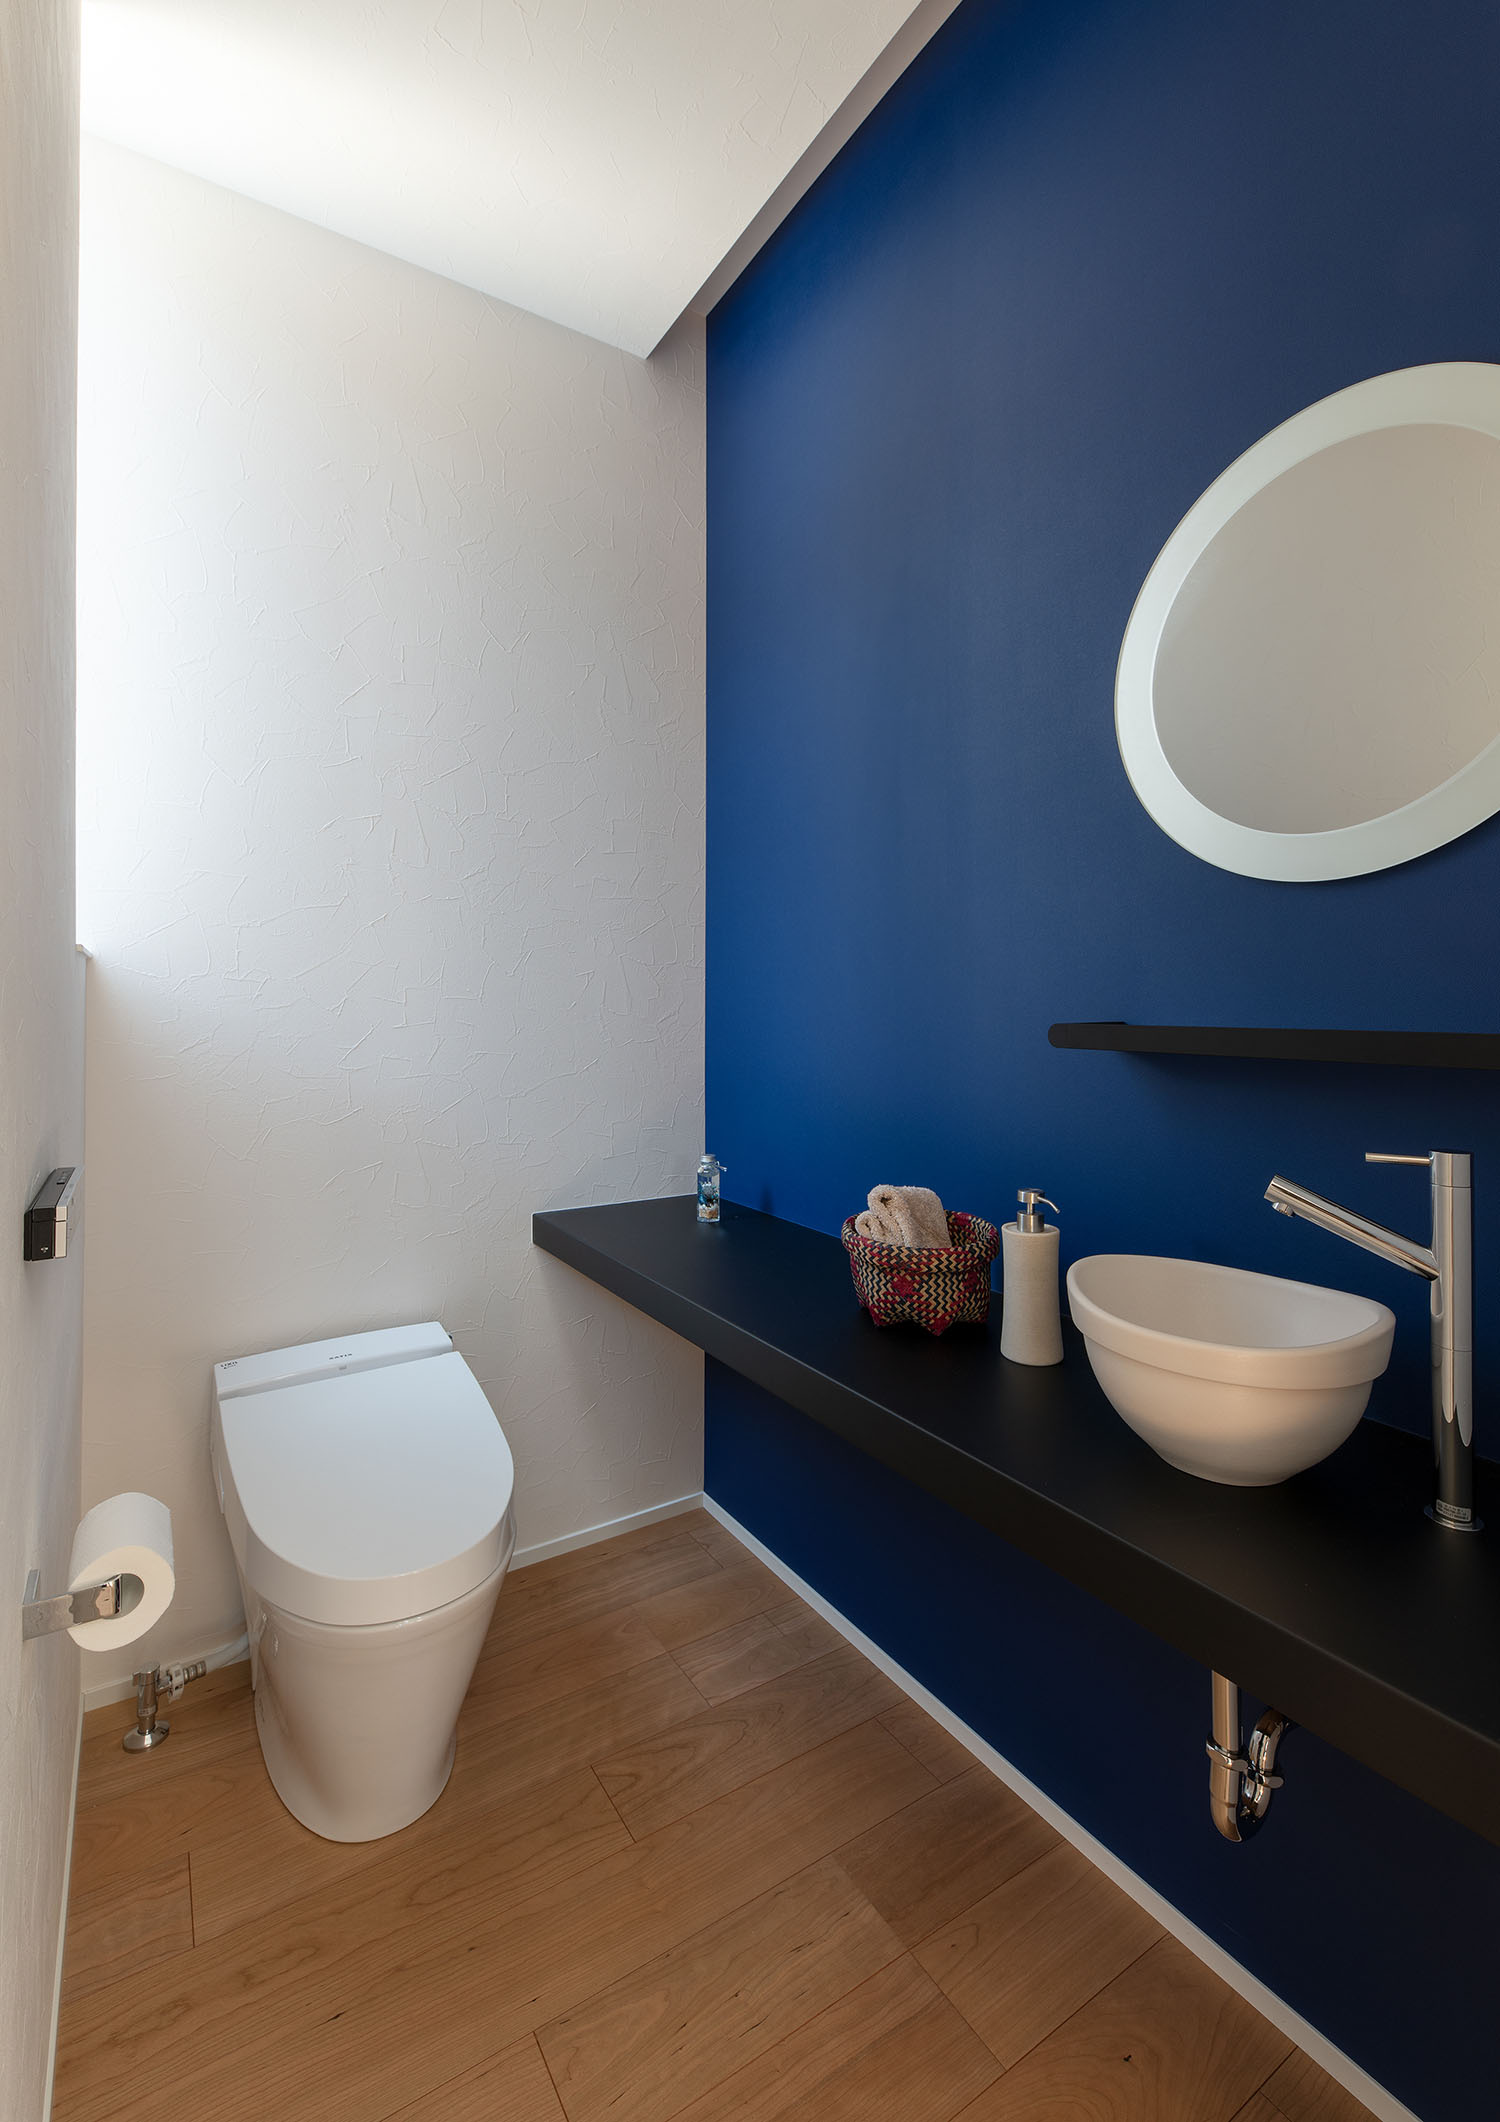 丸い鏡や薄型手洗いがある、青いアクセントクロスのトイレ・デザイン住宅